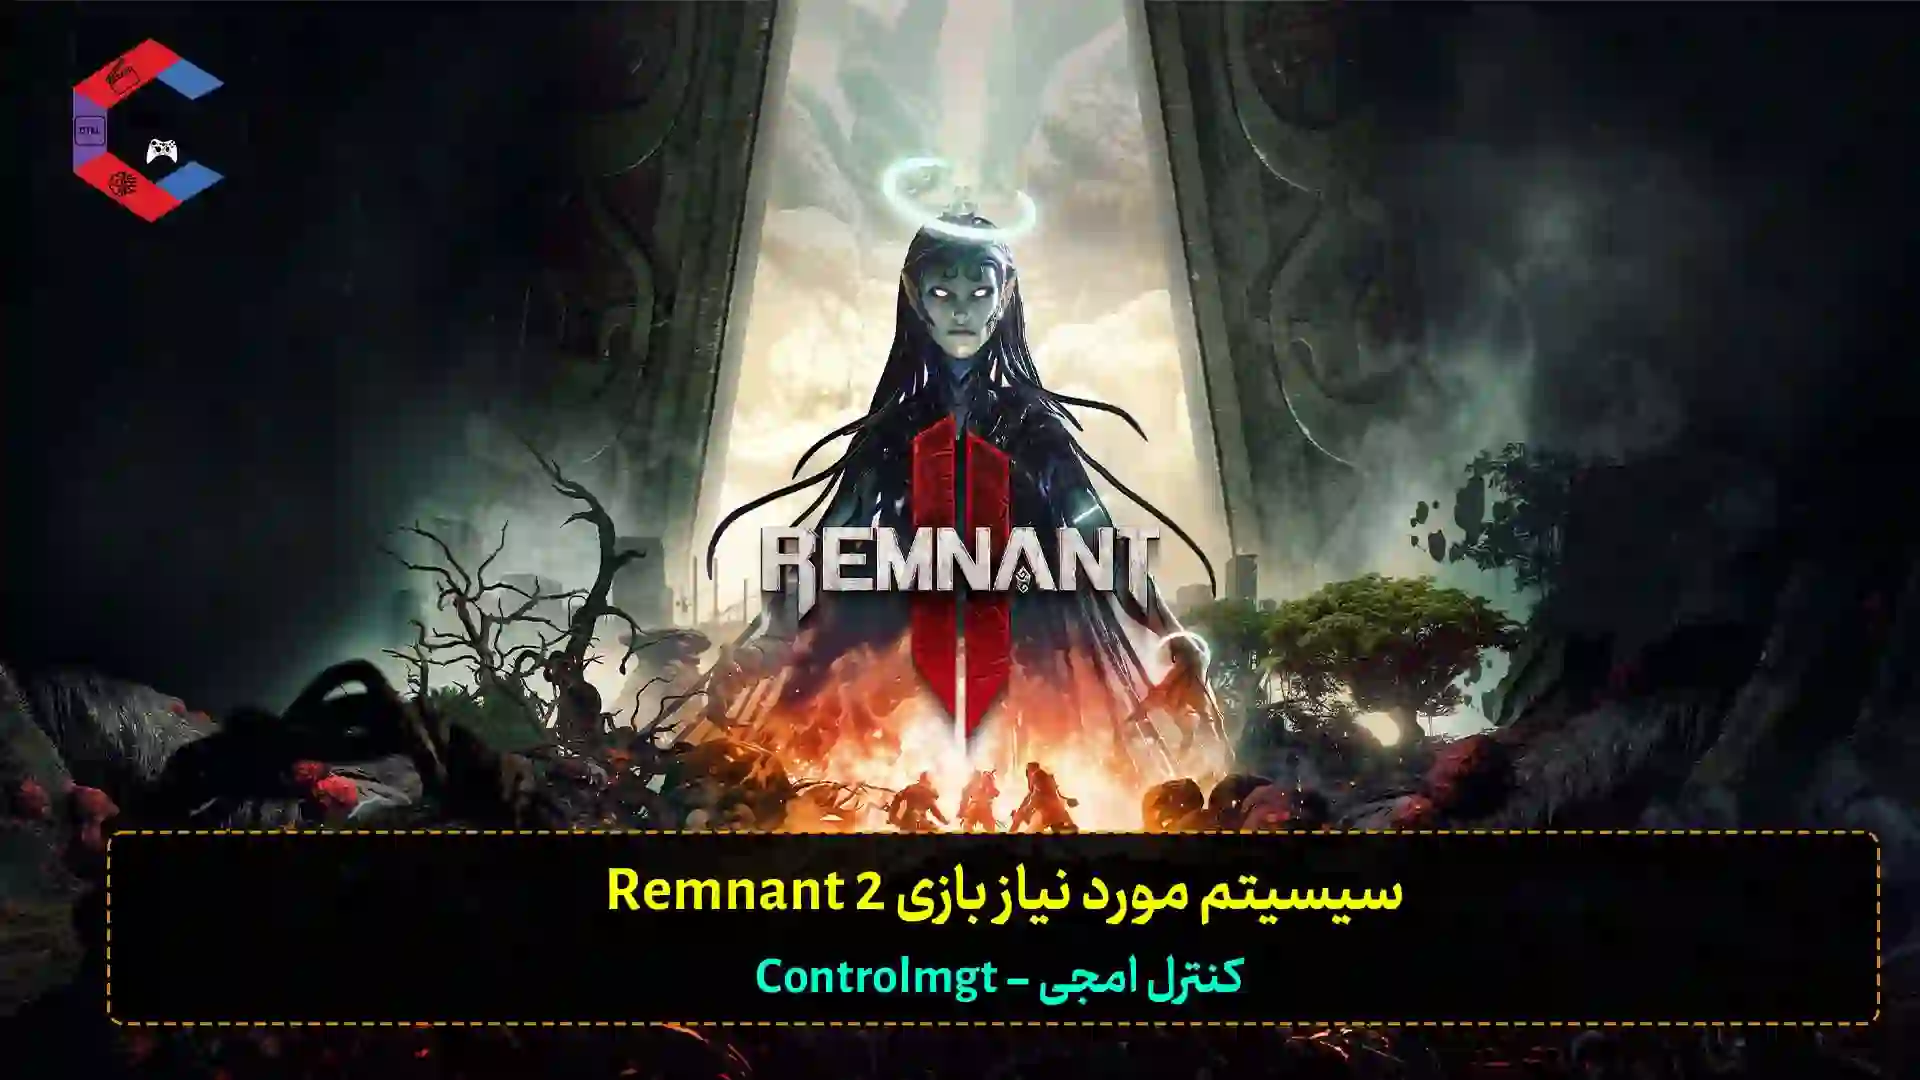 سیستم مورد نیاز بازی Remnant 2 + سیستم پیشنهادی